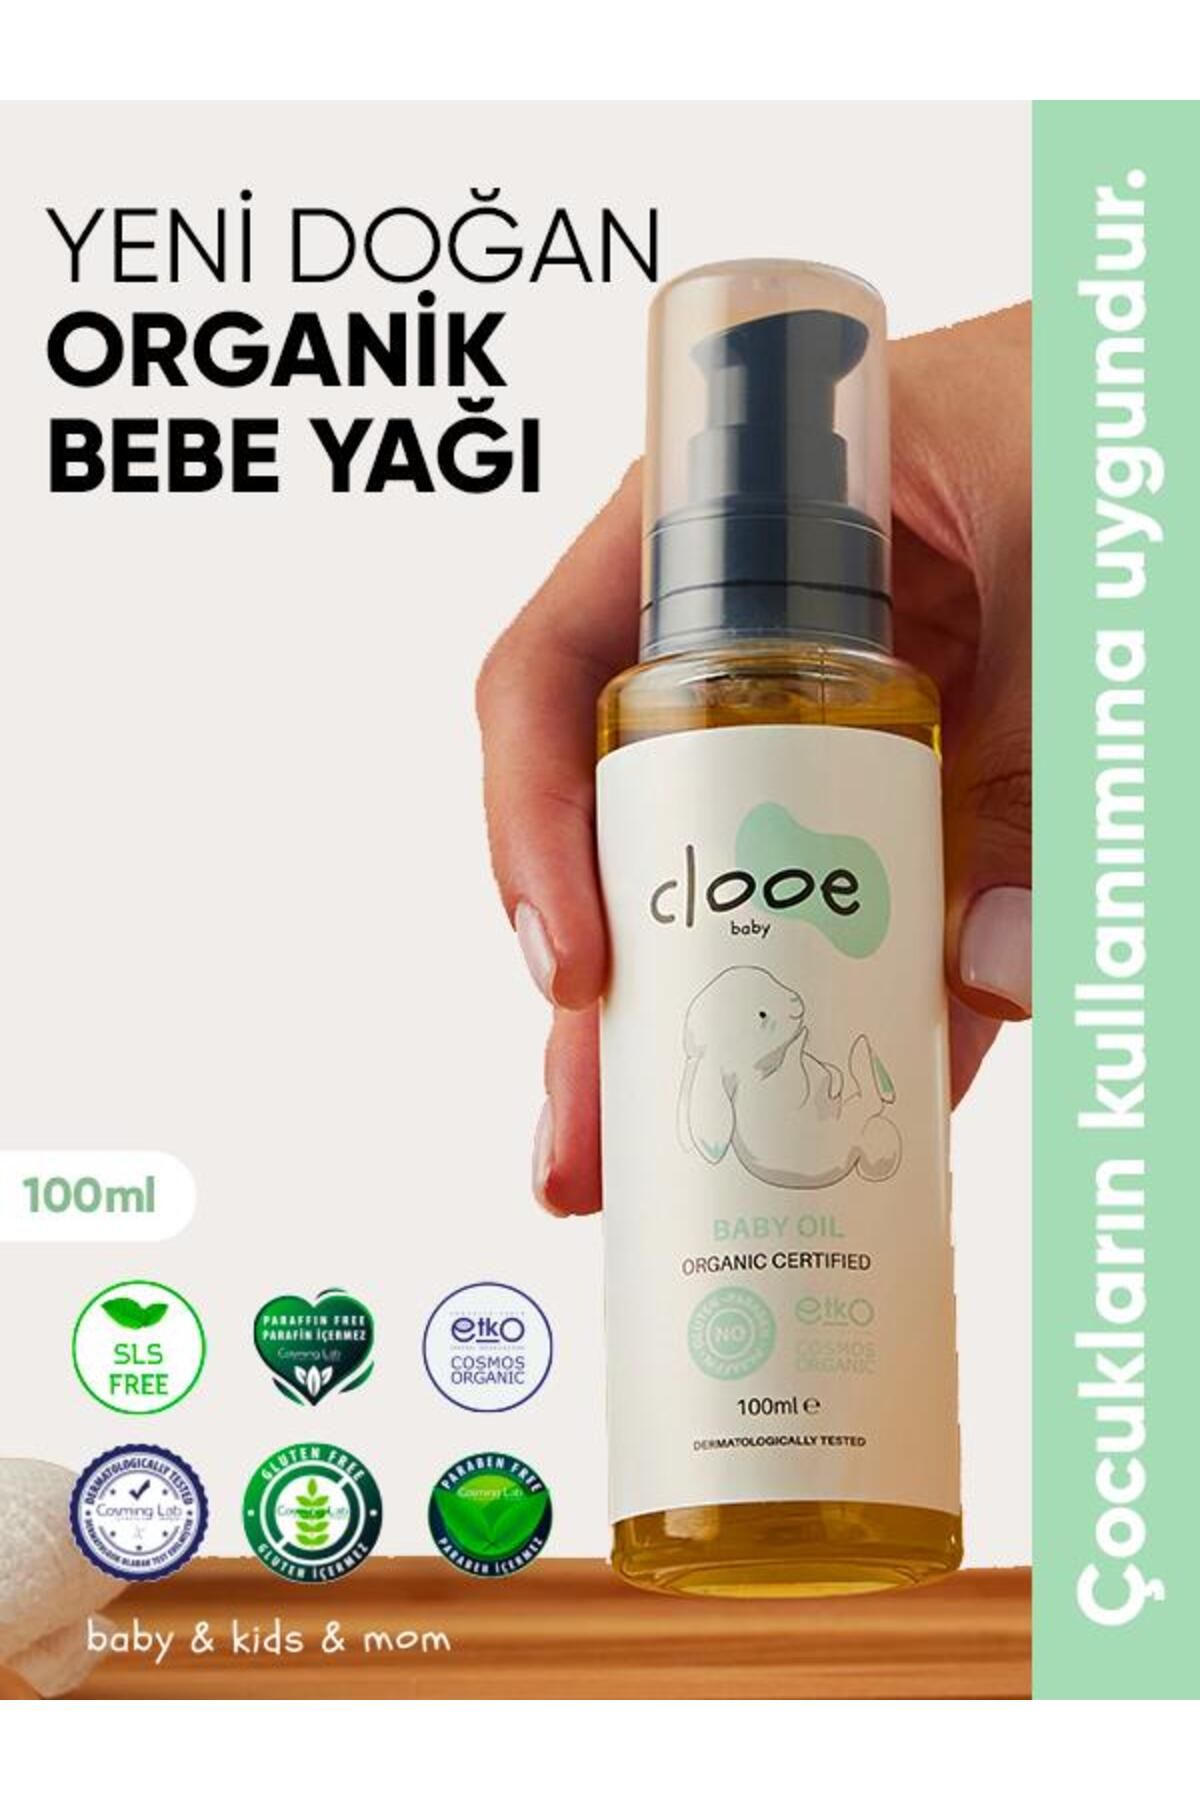 clooe Organik Bebek Yağı (100ML) - Zeytinyağı, Badem Yağı, Jojoba Yağı - Yenidoğan Kullanımına Uygun